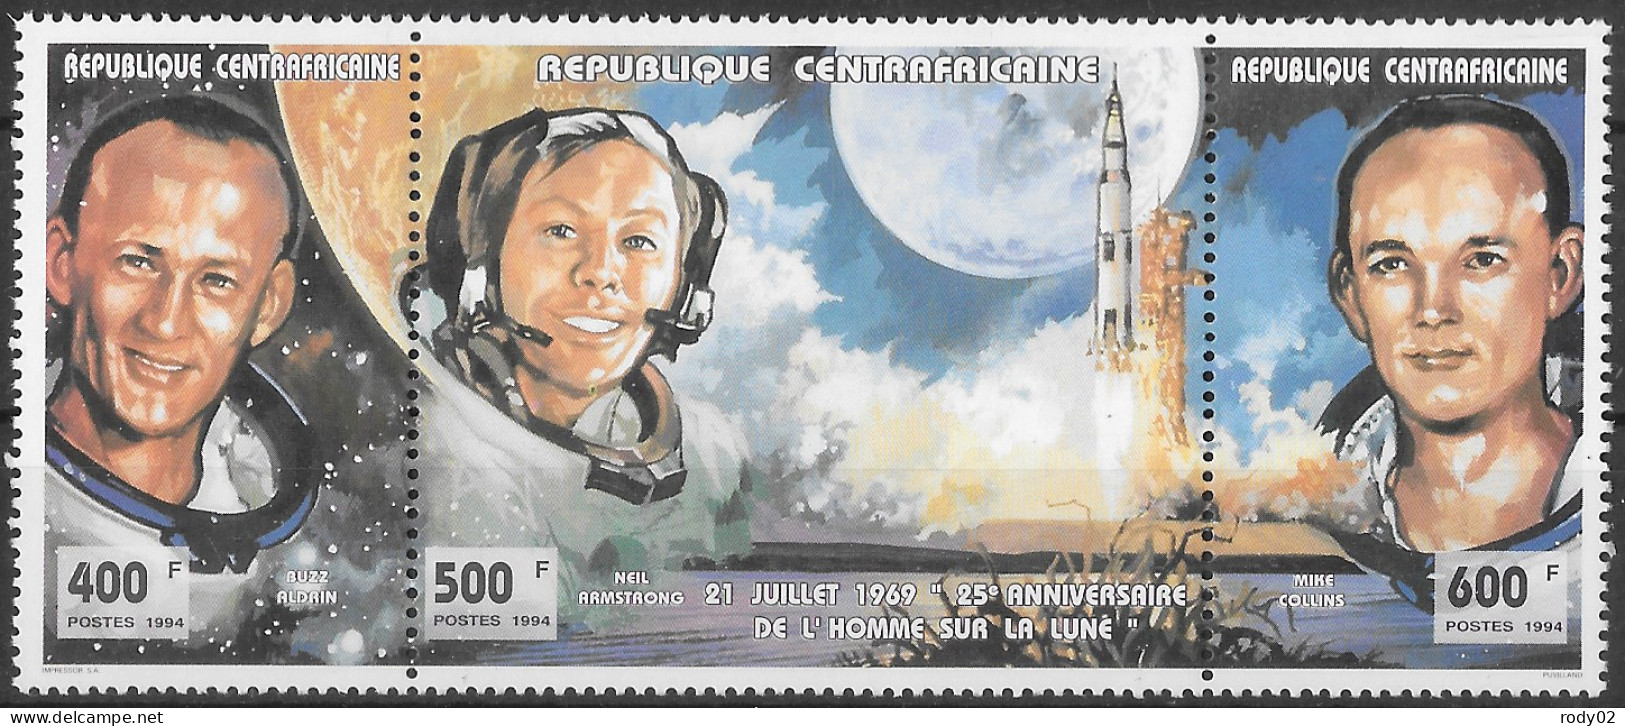 CENTRAFRIQUE - ESPACE - 1ER HOMME SUR LA LUNE - ASTRONAUTES - N° 1005 A 1007 - NEUF** MNH - Afrique